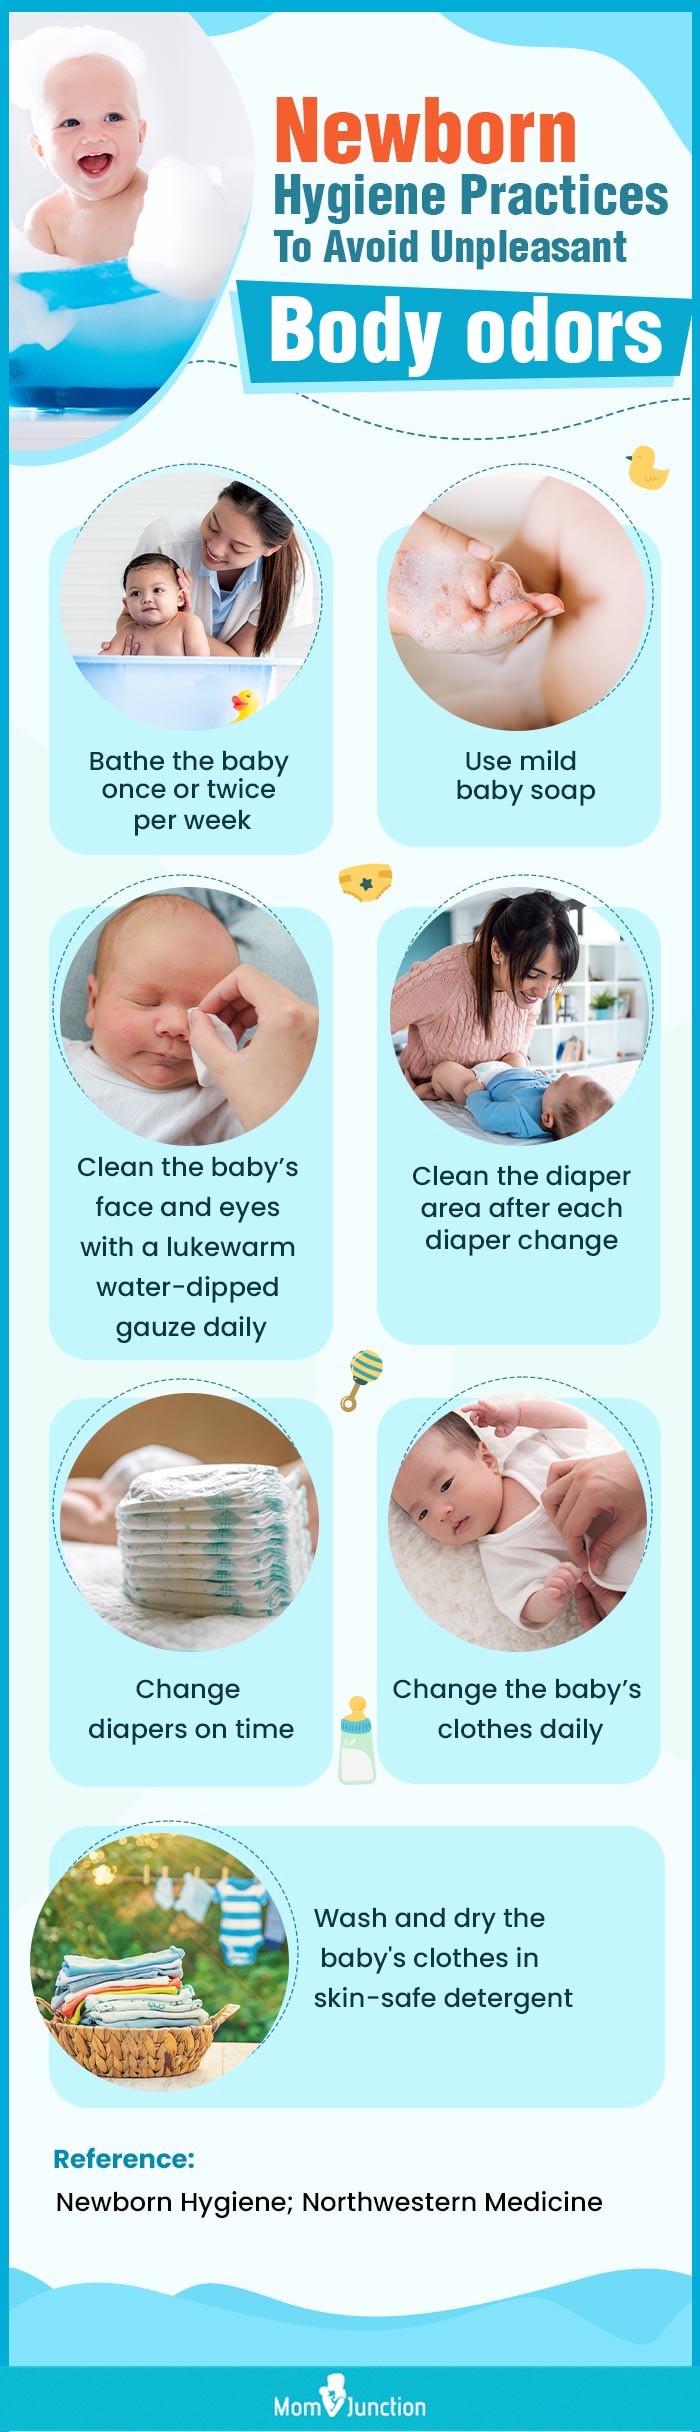 新生儿避免难闻体臭的卫生习惯(信息图)